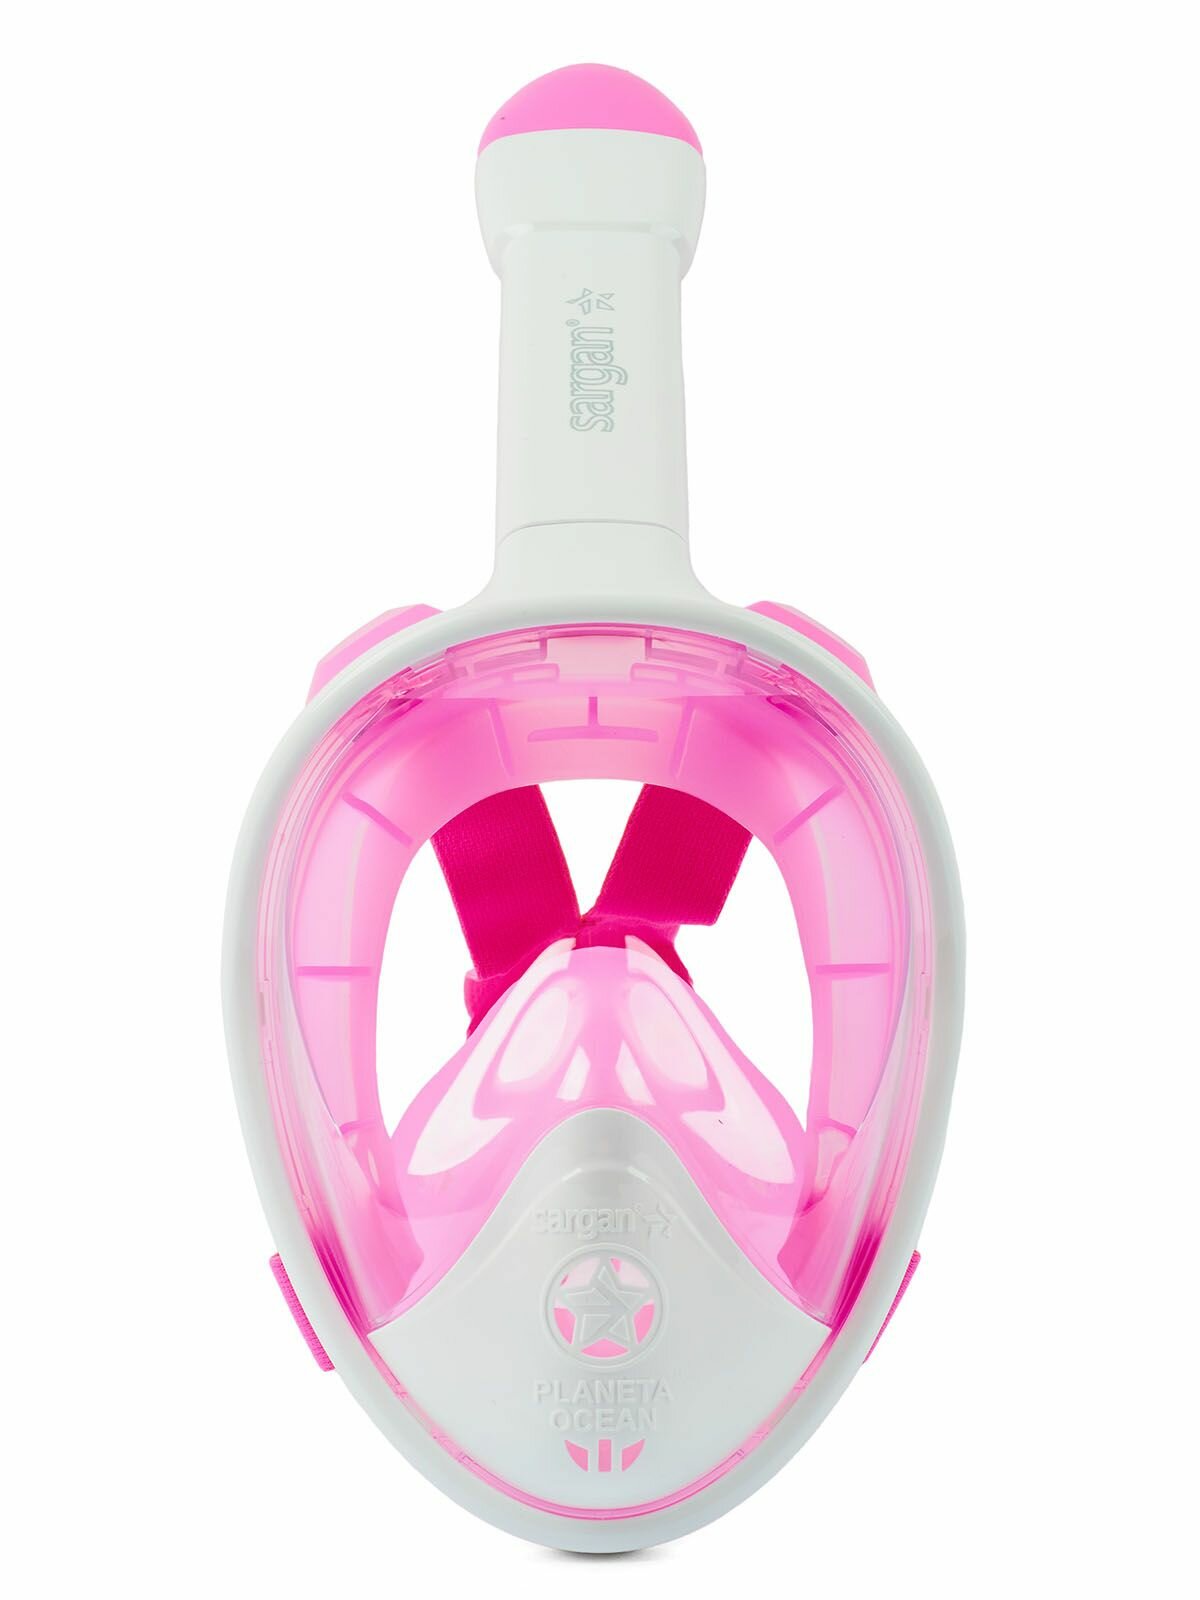 Полнолицевая маска для подводного плавания с трубкой SARGAN PLANETA OCEAN размер S-M белый/розовый